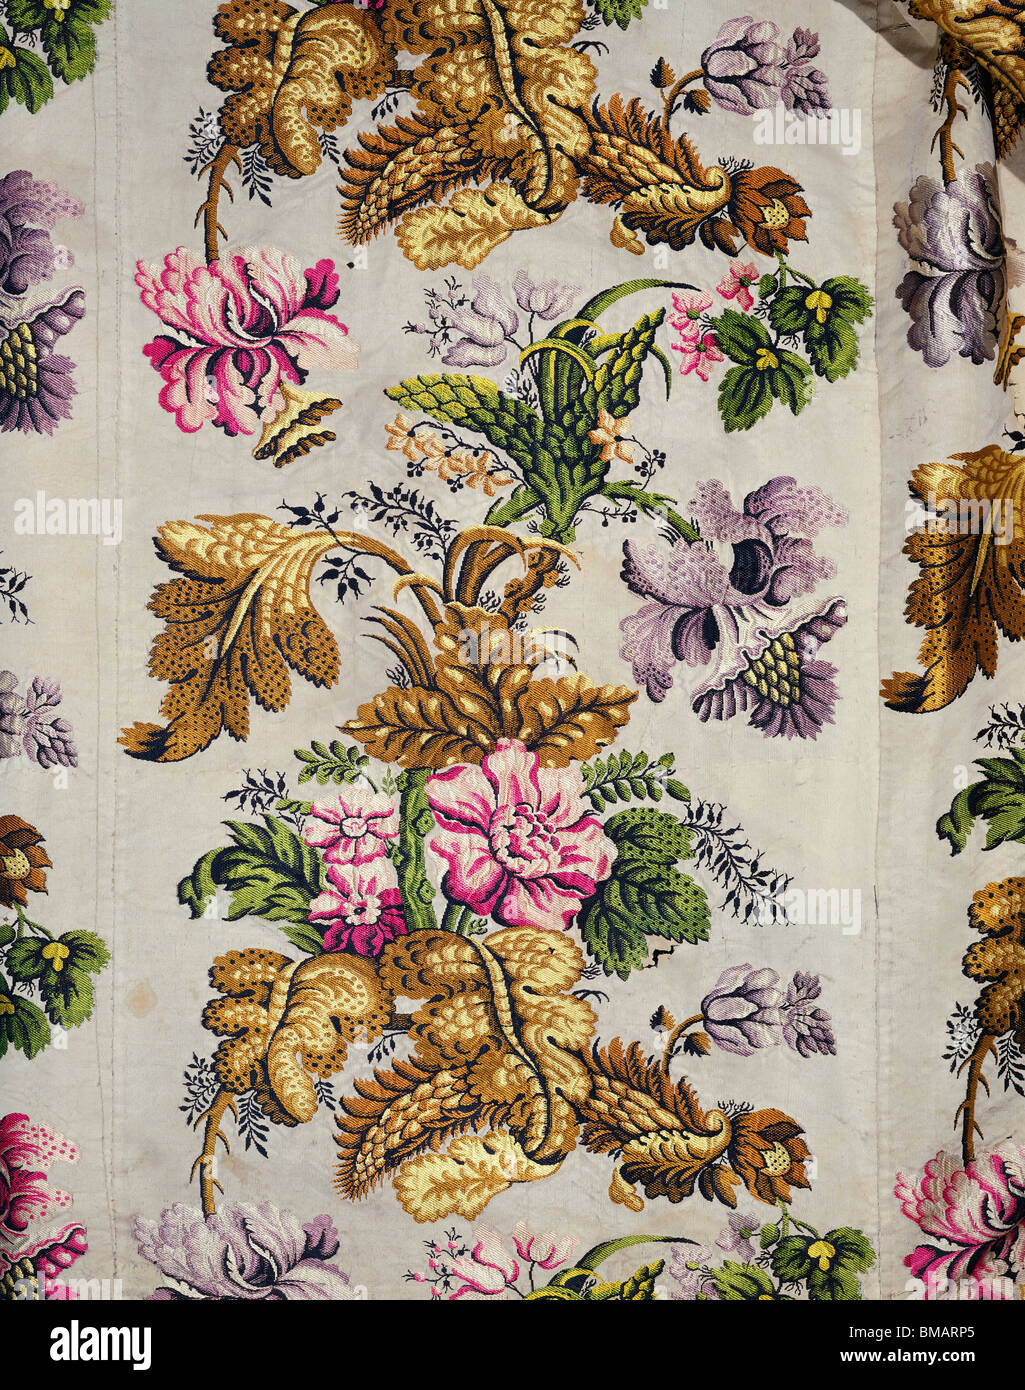 Brocaded textiles florales, robe detalle. Inglaterra, c.1730 Foto de stock